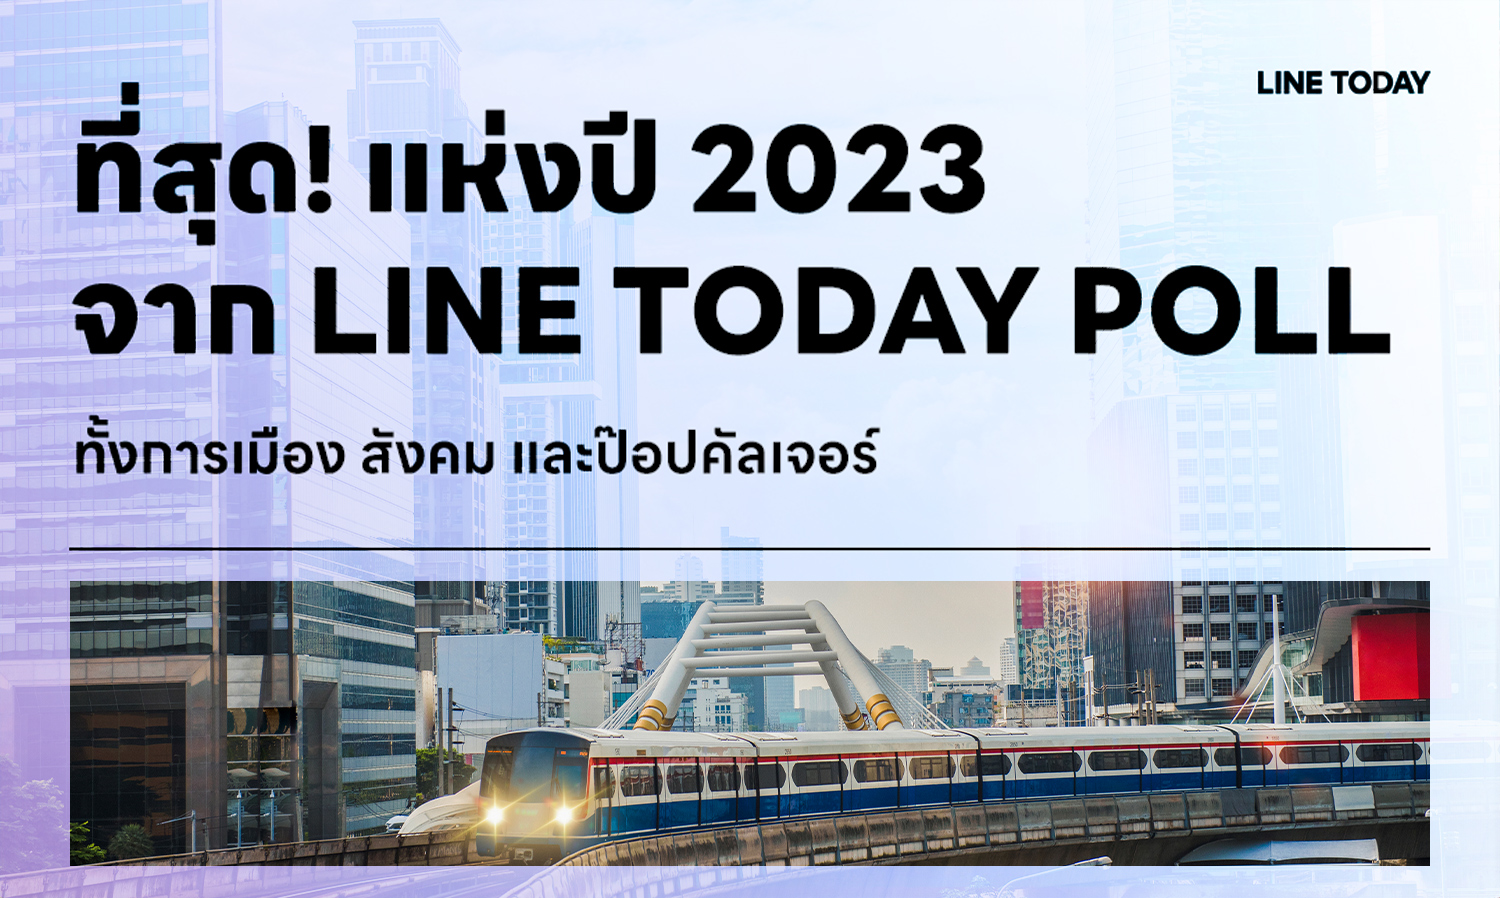 LINE TODAY POLL เผย พิธาหลุดนายกฯ ที่สุดข่าวแห่งปี 2023 พร้อมเปิดผลโพลการเมือง สังคม ป๊อปคัลเจอร์